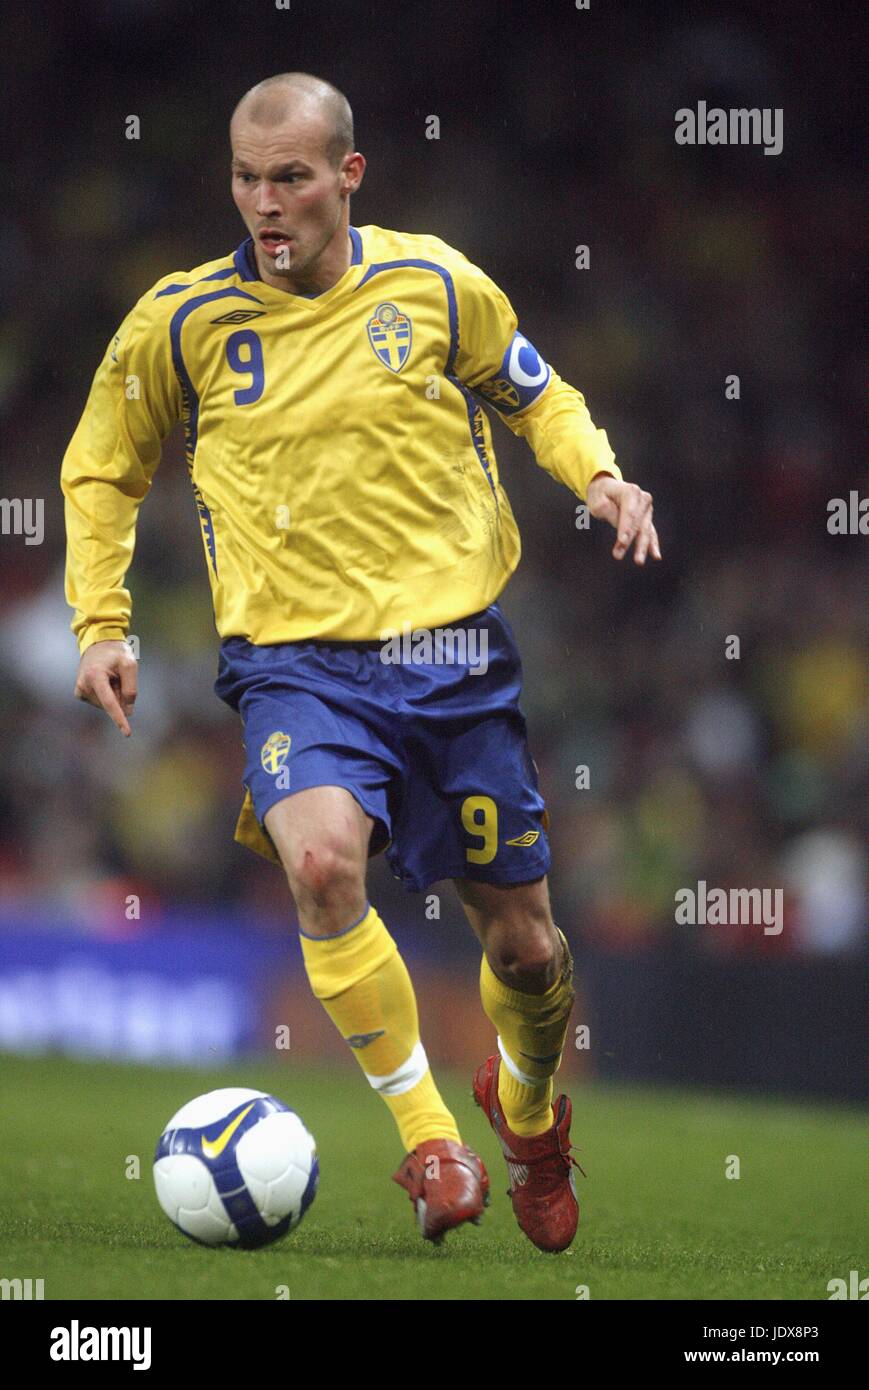 Freddie Ljungberg Sweden soccer jersey